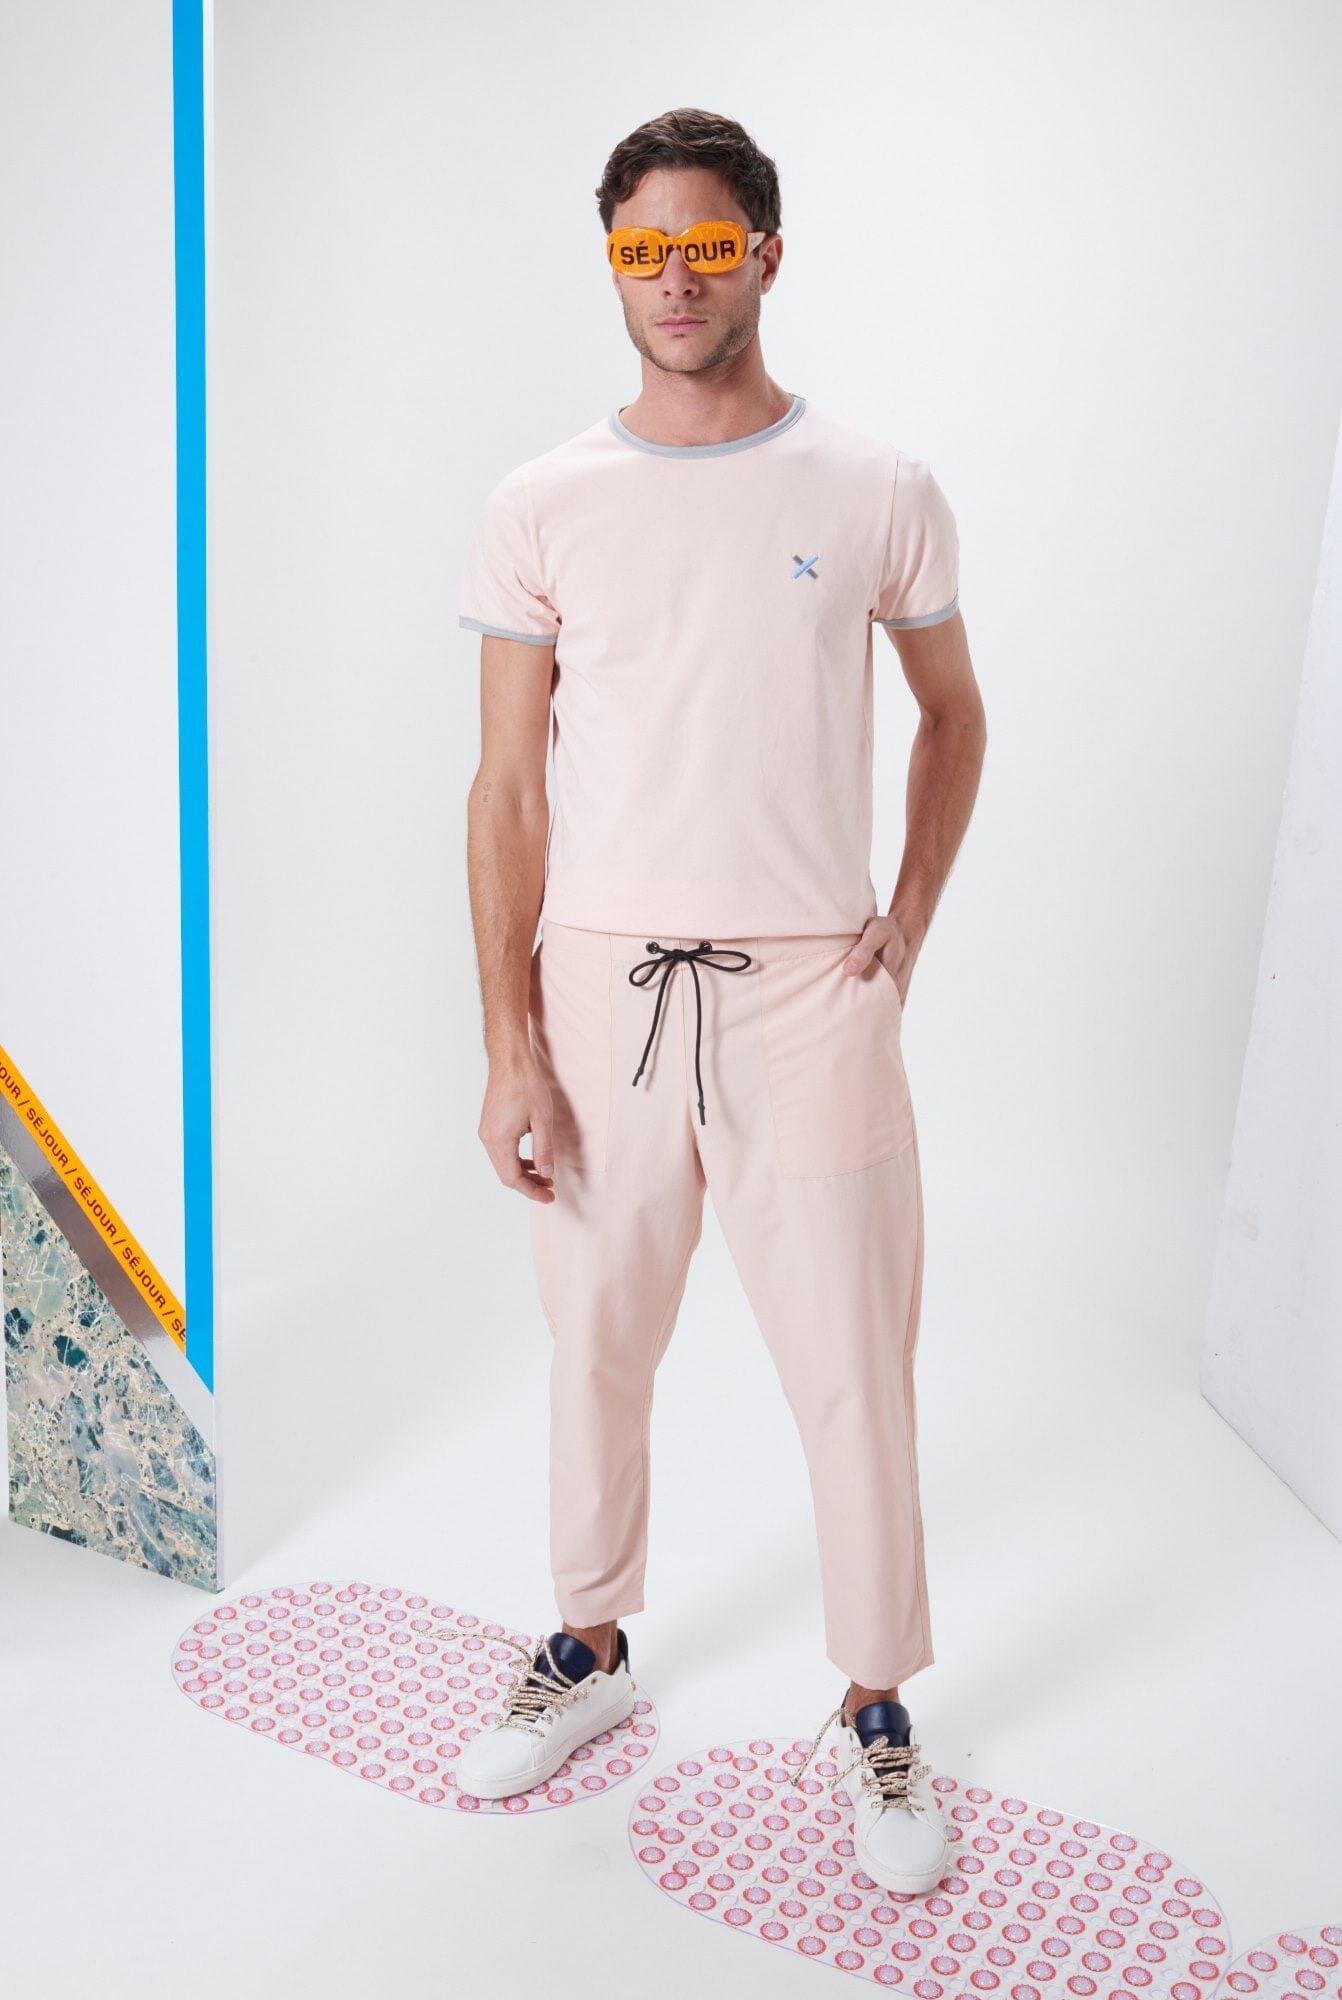 Playa - Pink T-shirt LaurenceAirline 